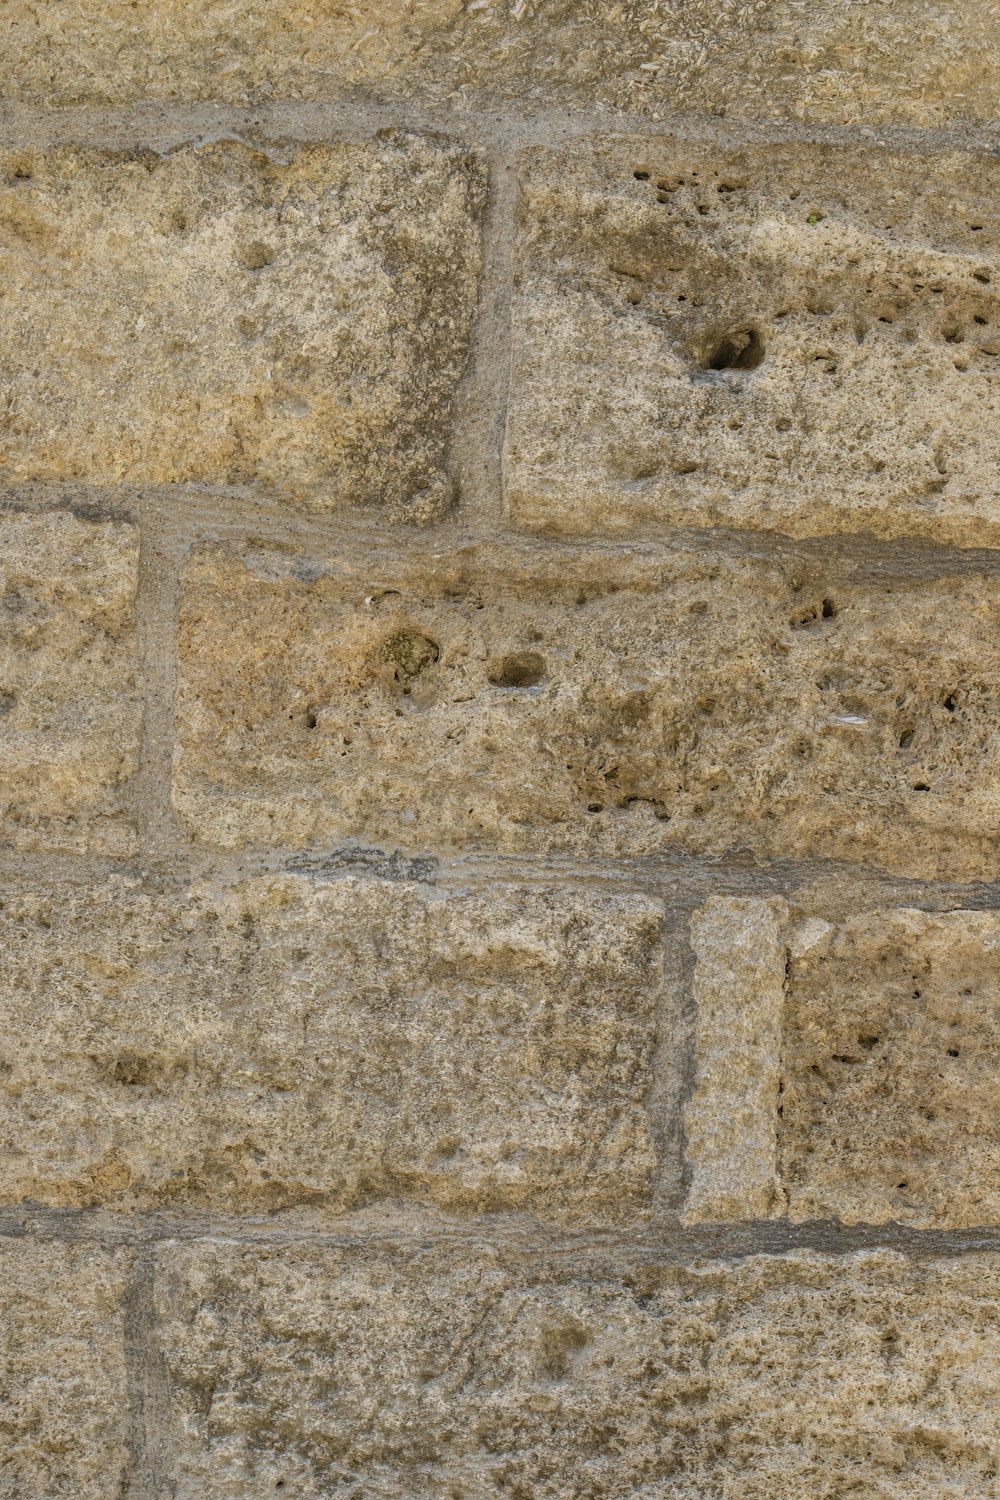 Un oiseau est perché sur un mur de briques